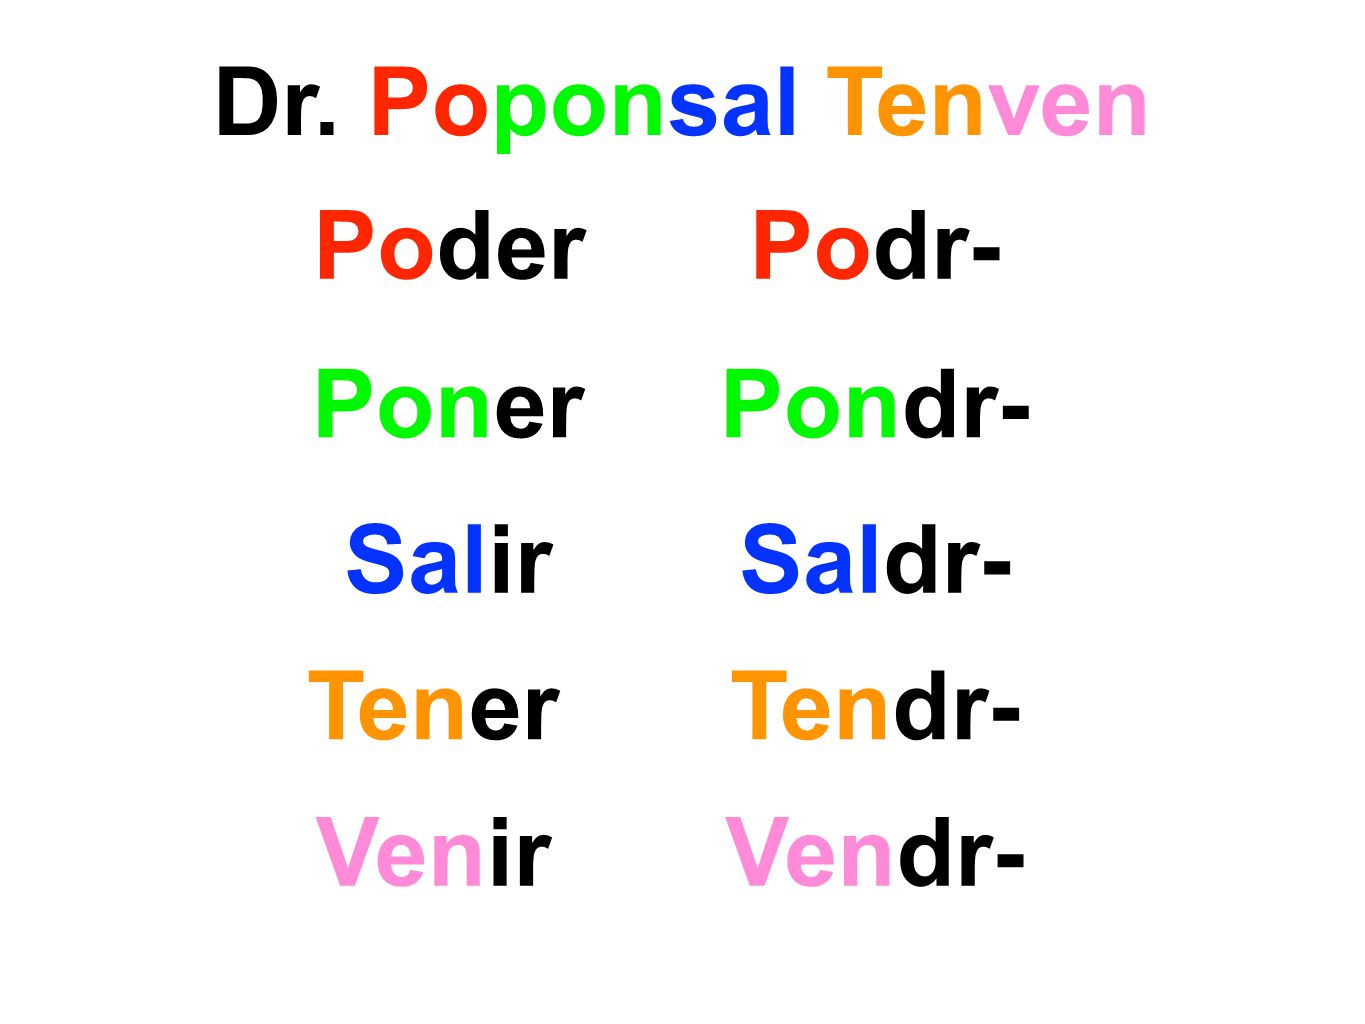 Podr-Poder Pondr-Poner SalirSaldr- TenerTendr- VenirVendr-